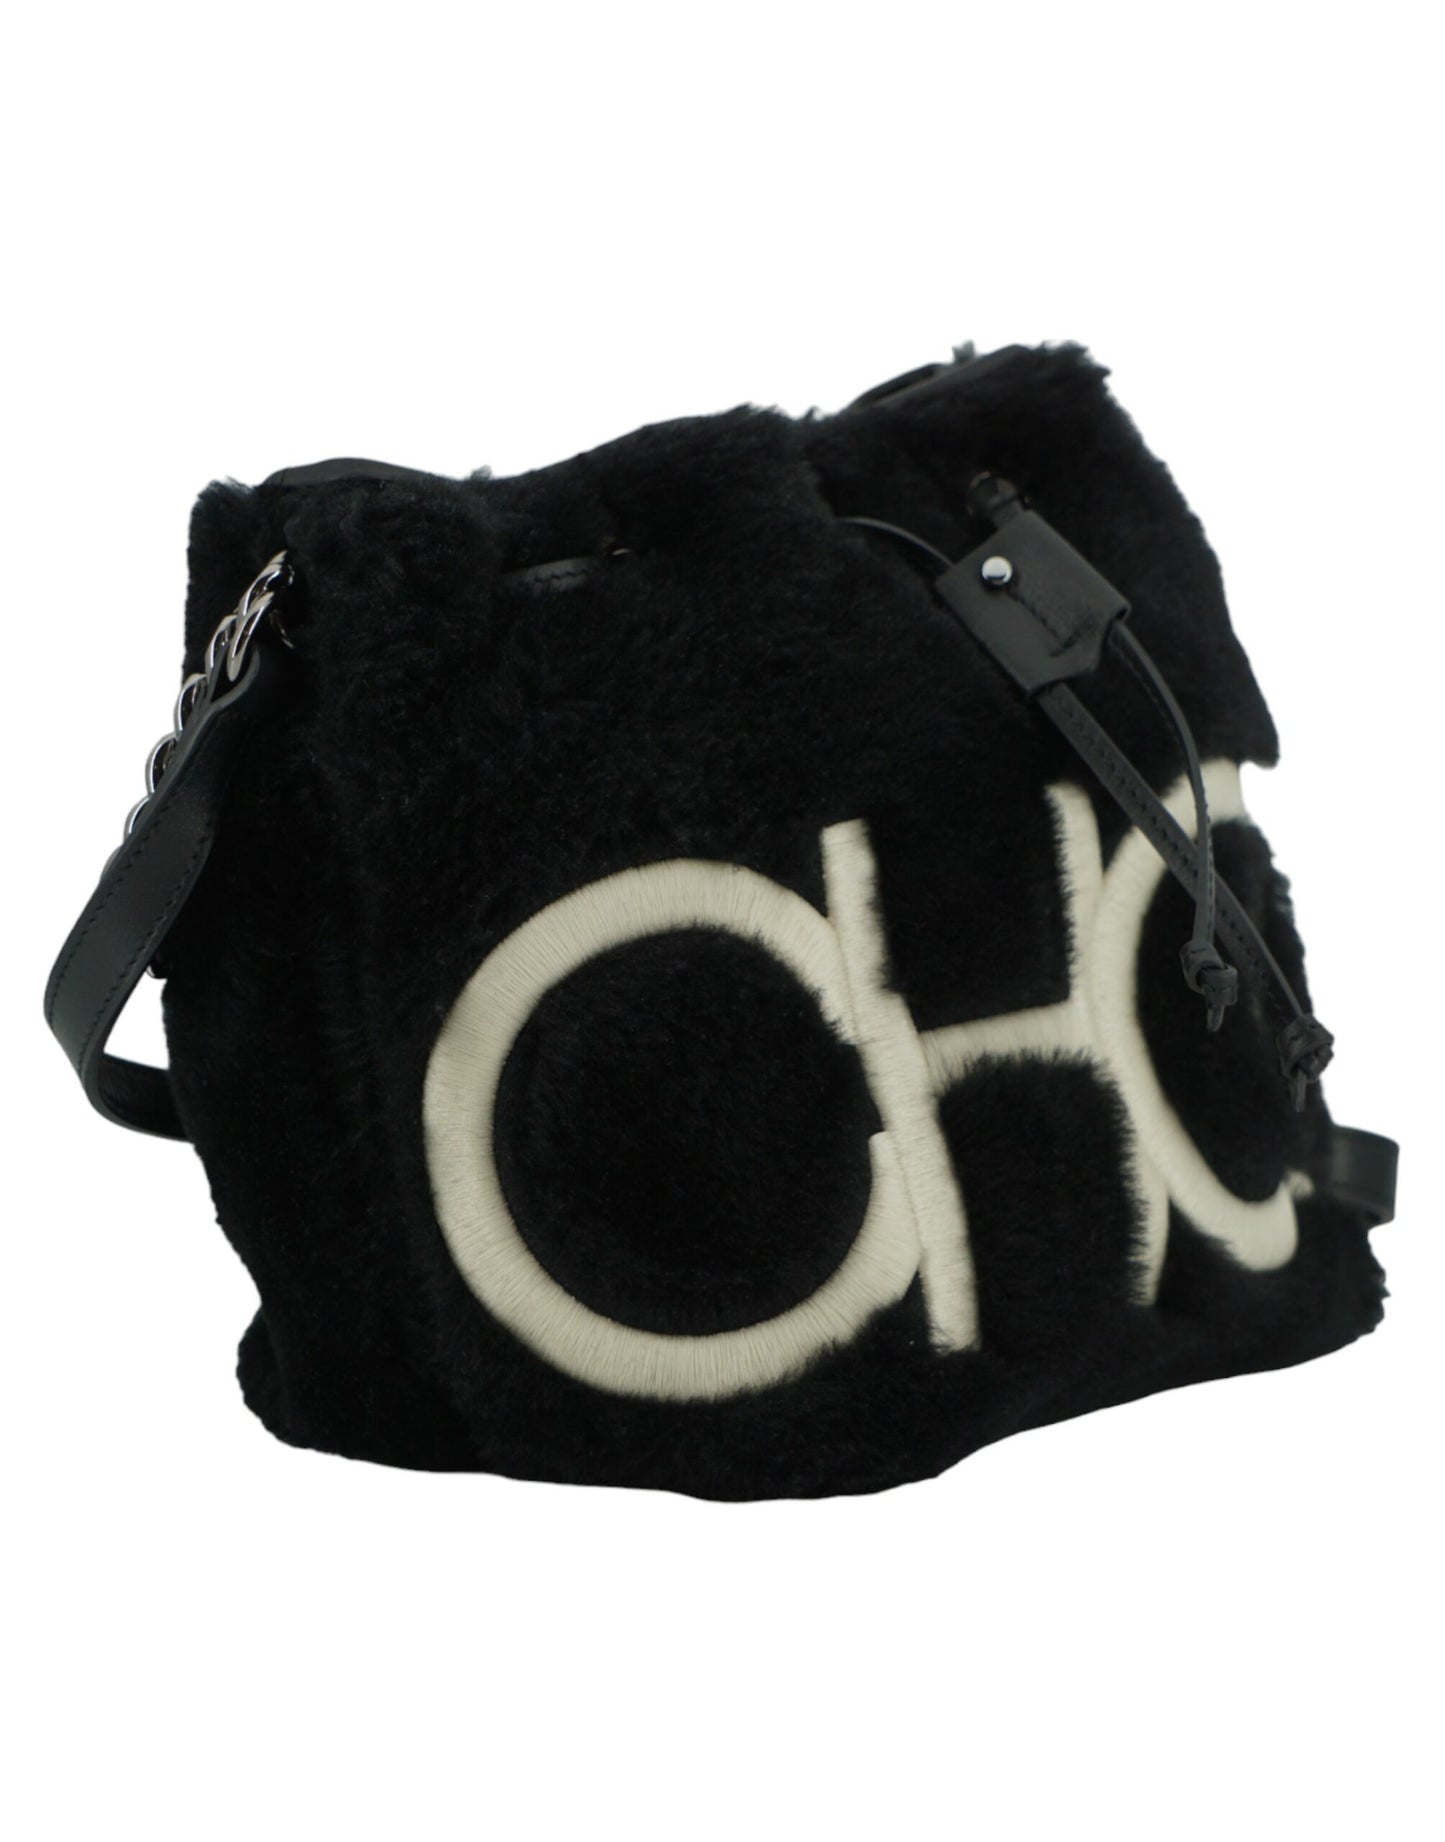 Black Leather Top Handle and Shoulder Bag